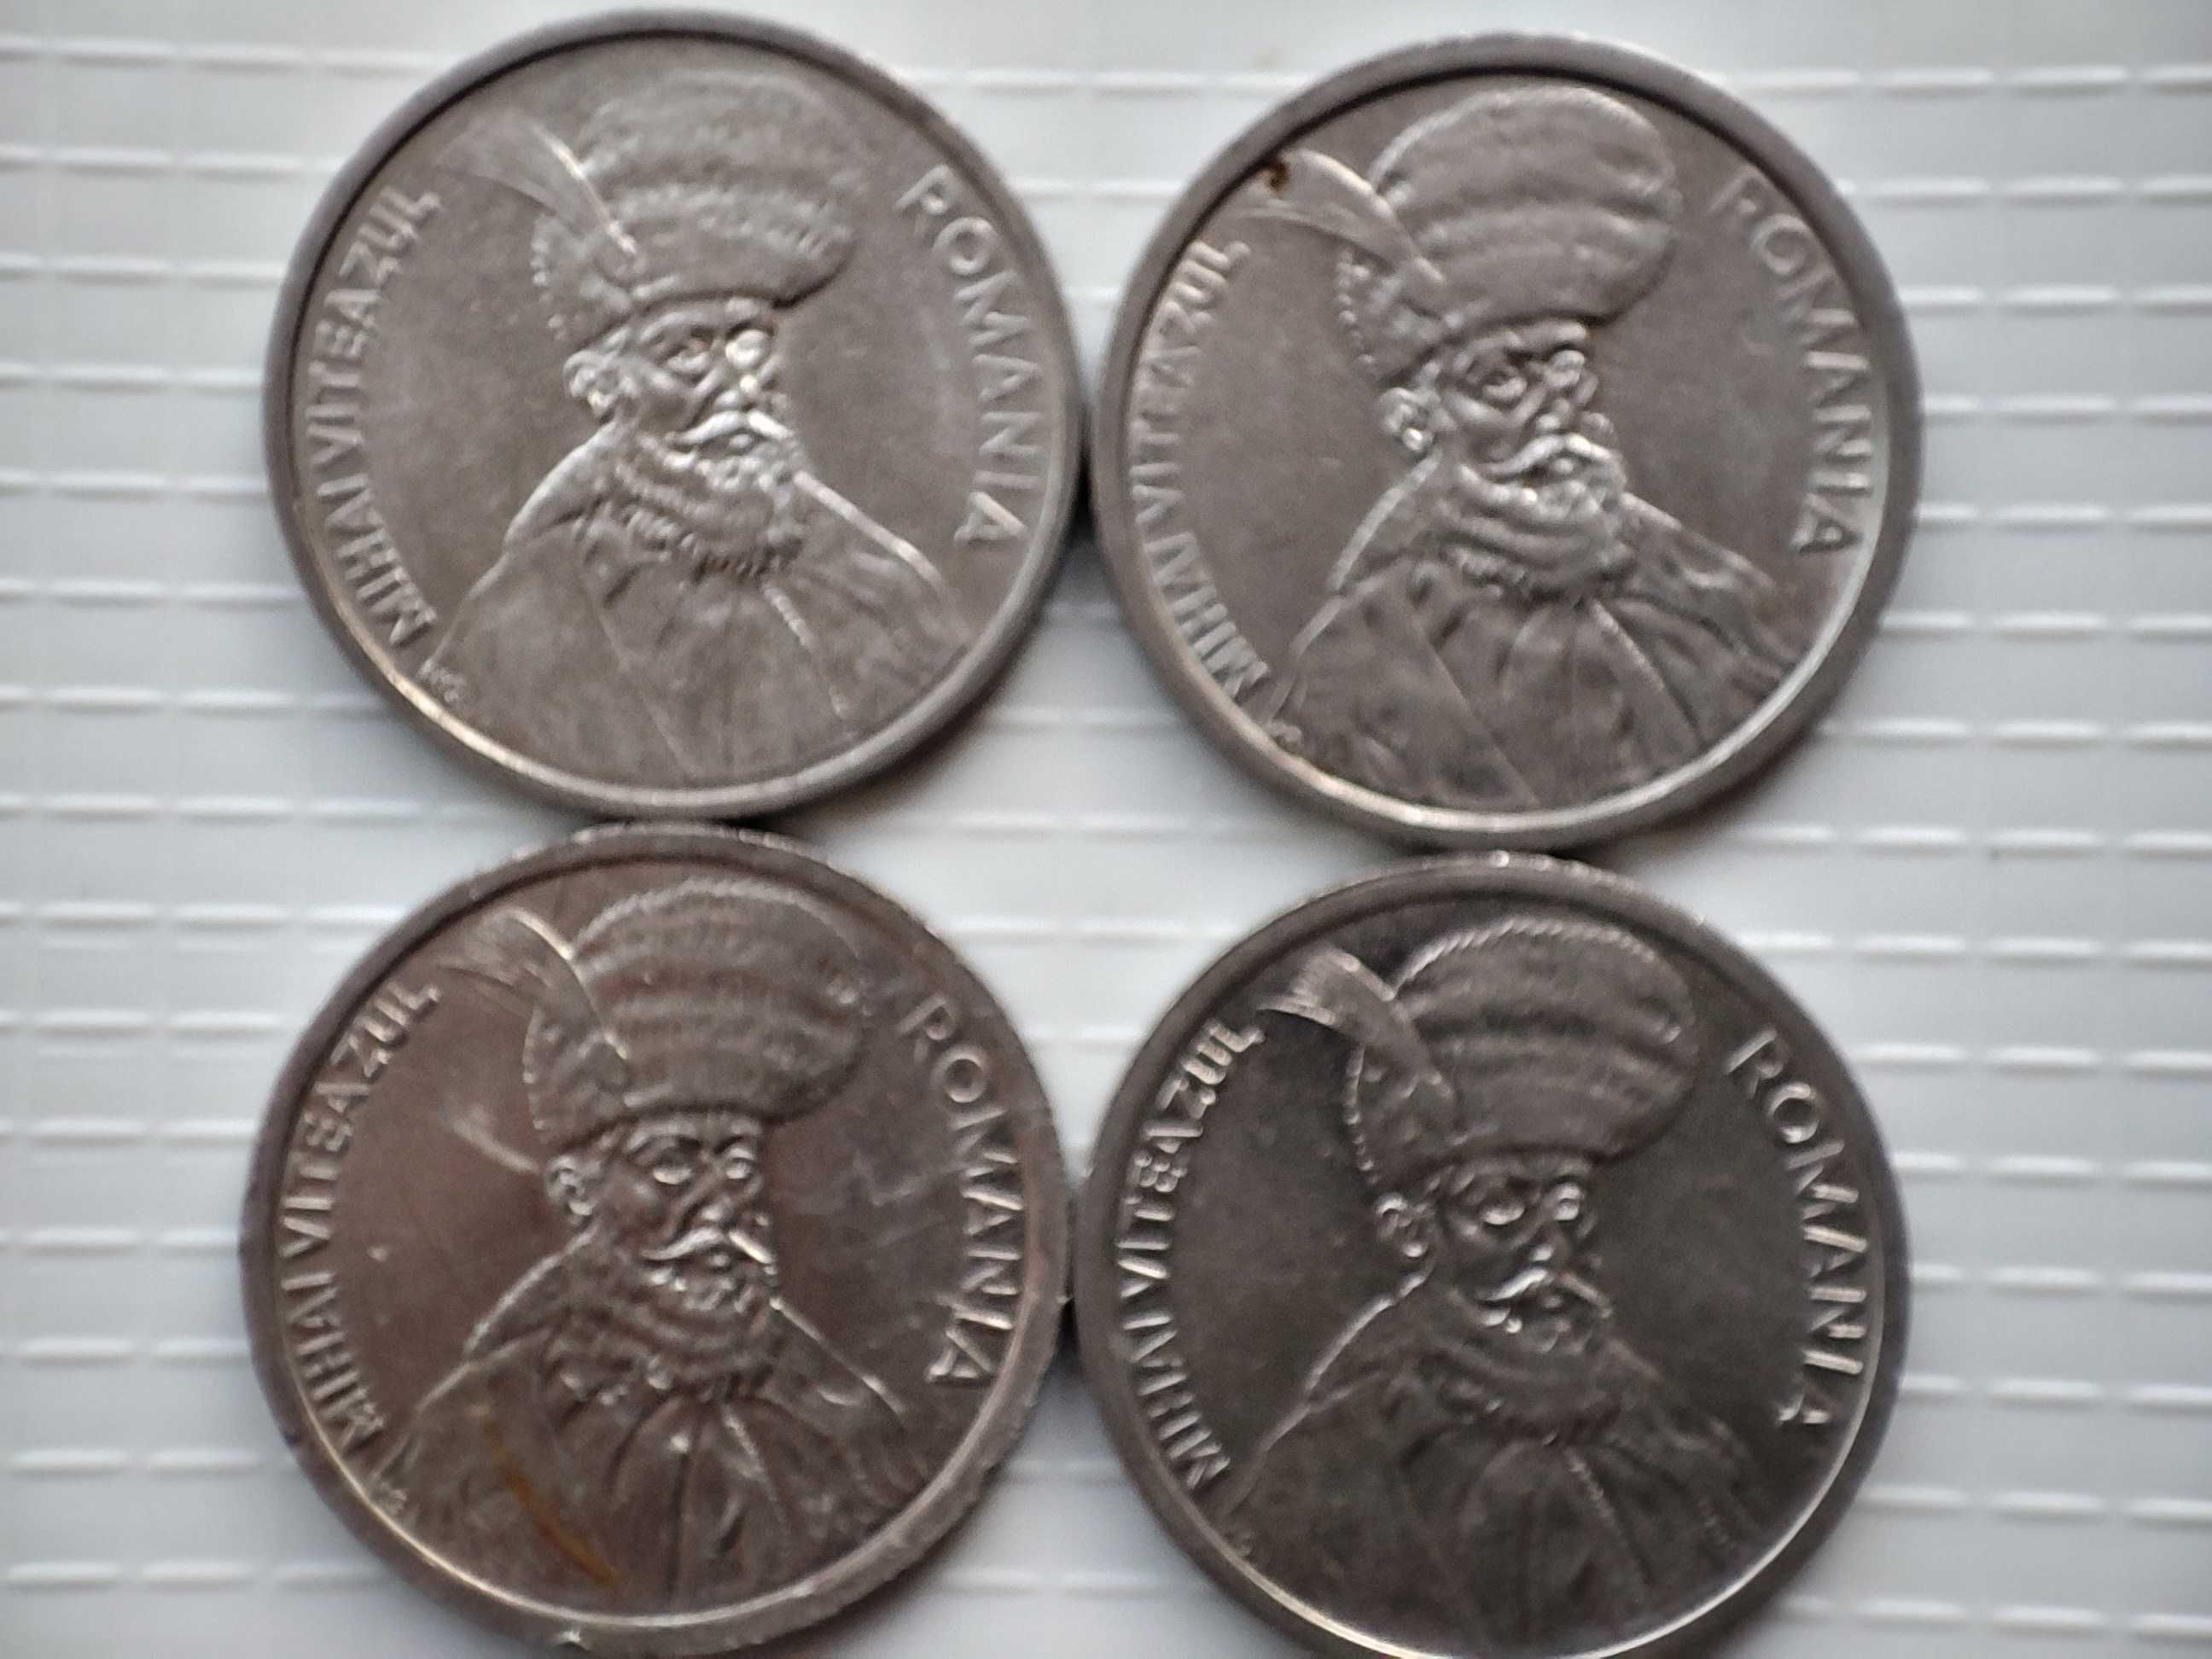 Monede 100 lei din anii 1991, 1992, 1993, 1994